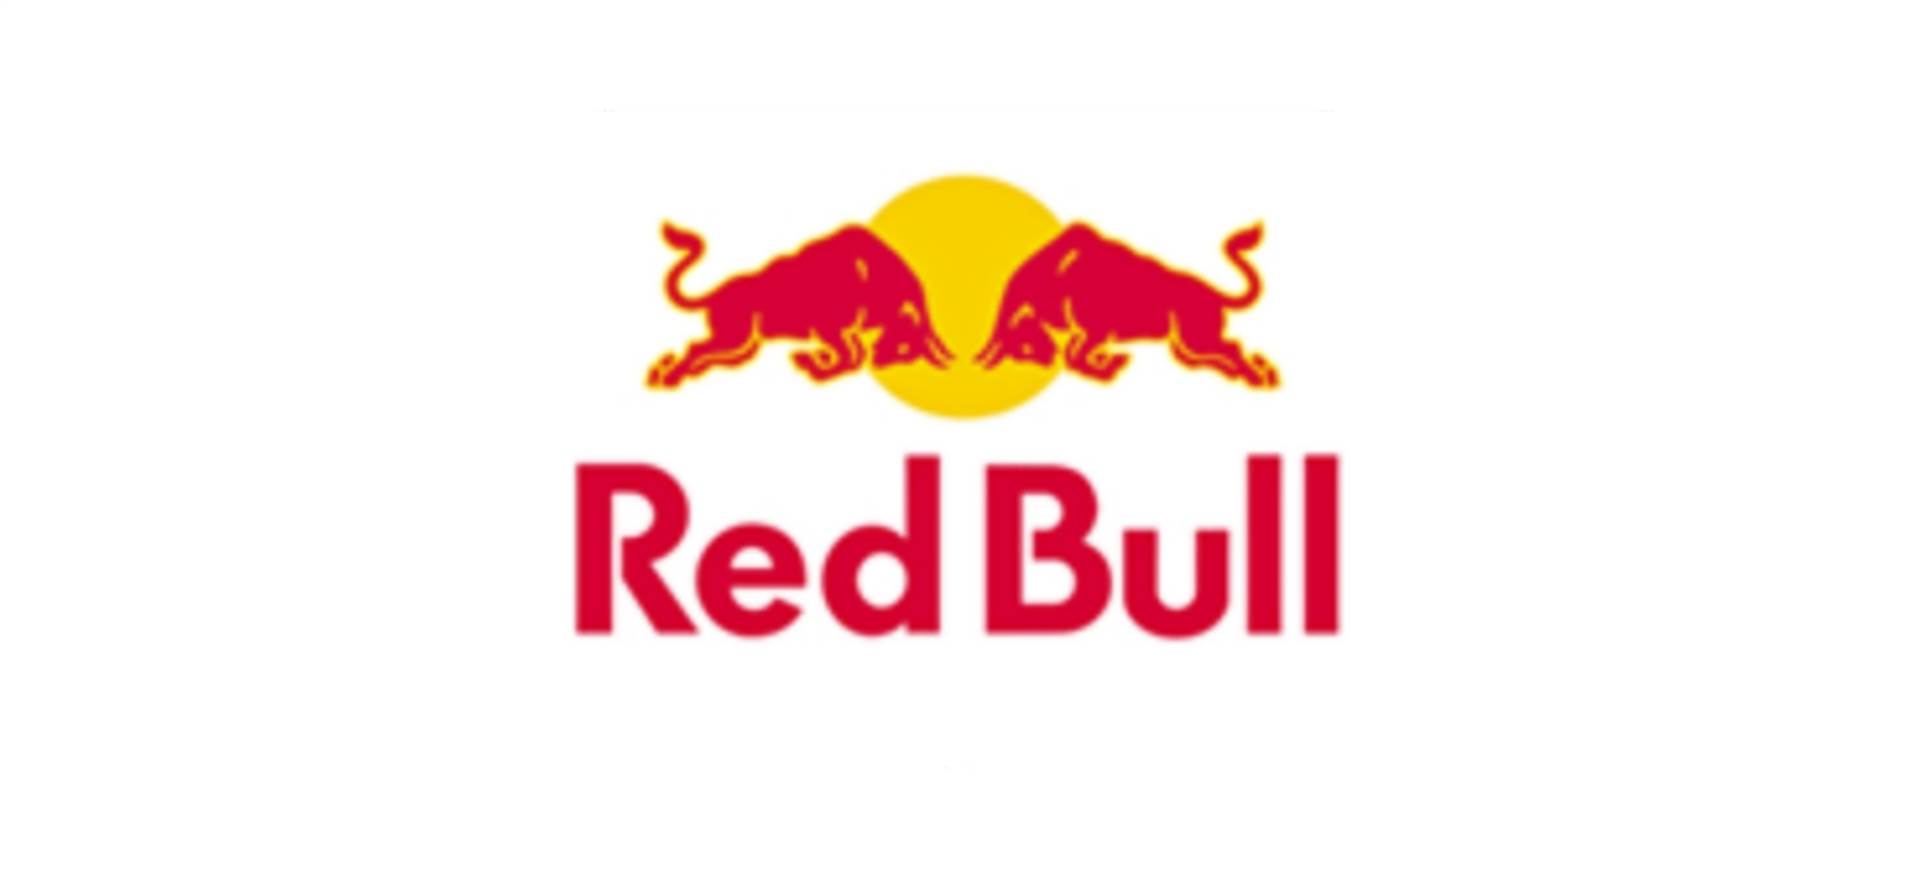 Pressemitteilung Red Bull ist online!